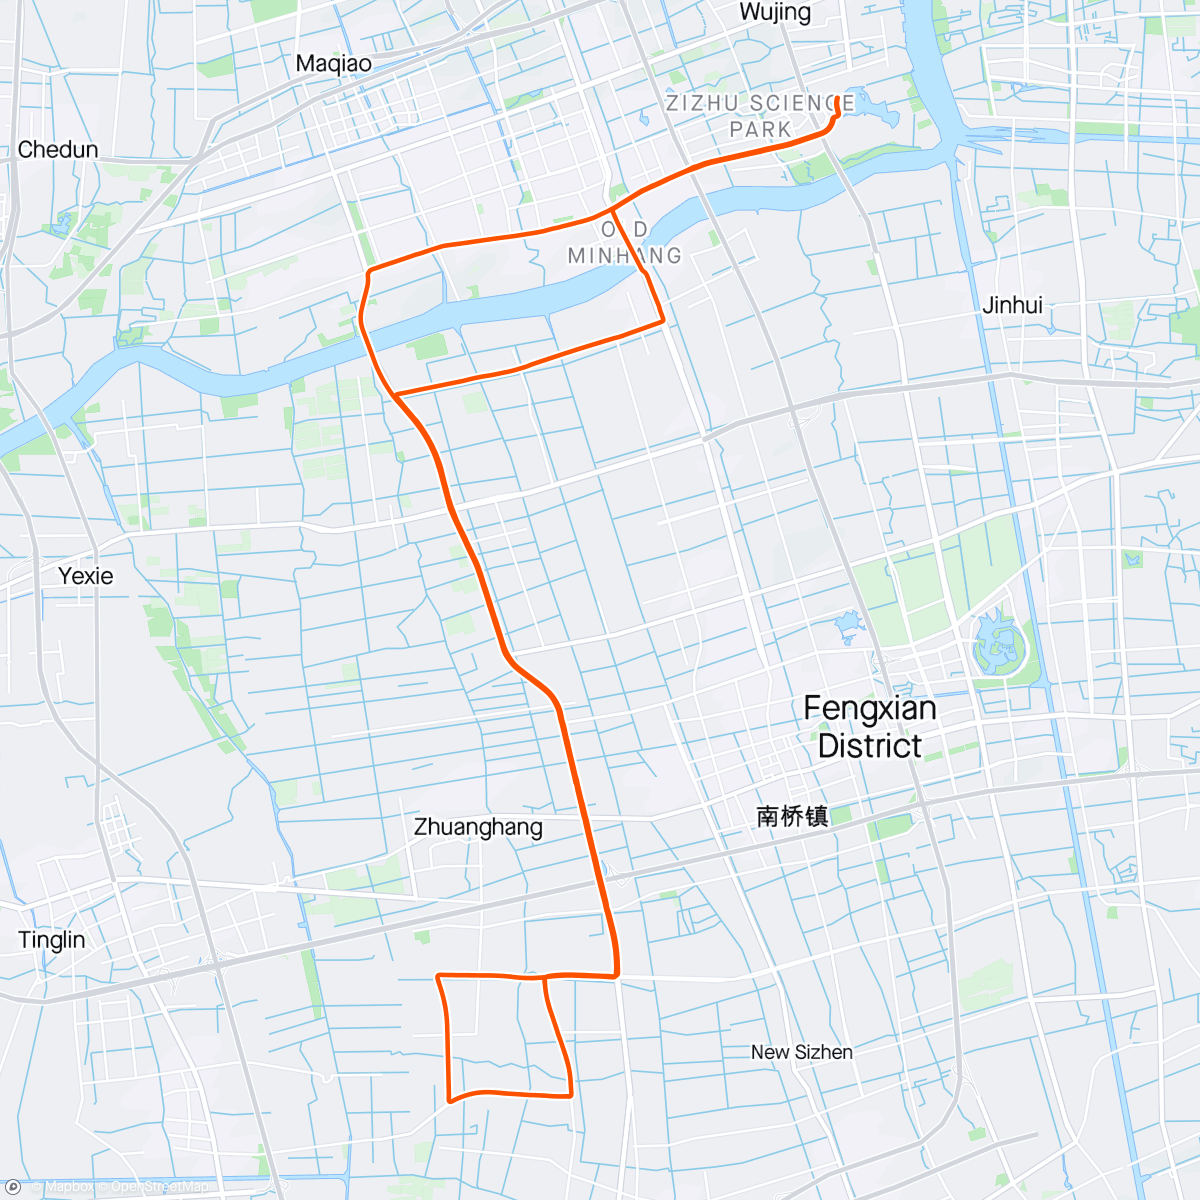 「晨间骑行」活動的地圖